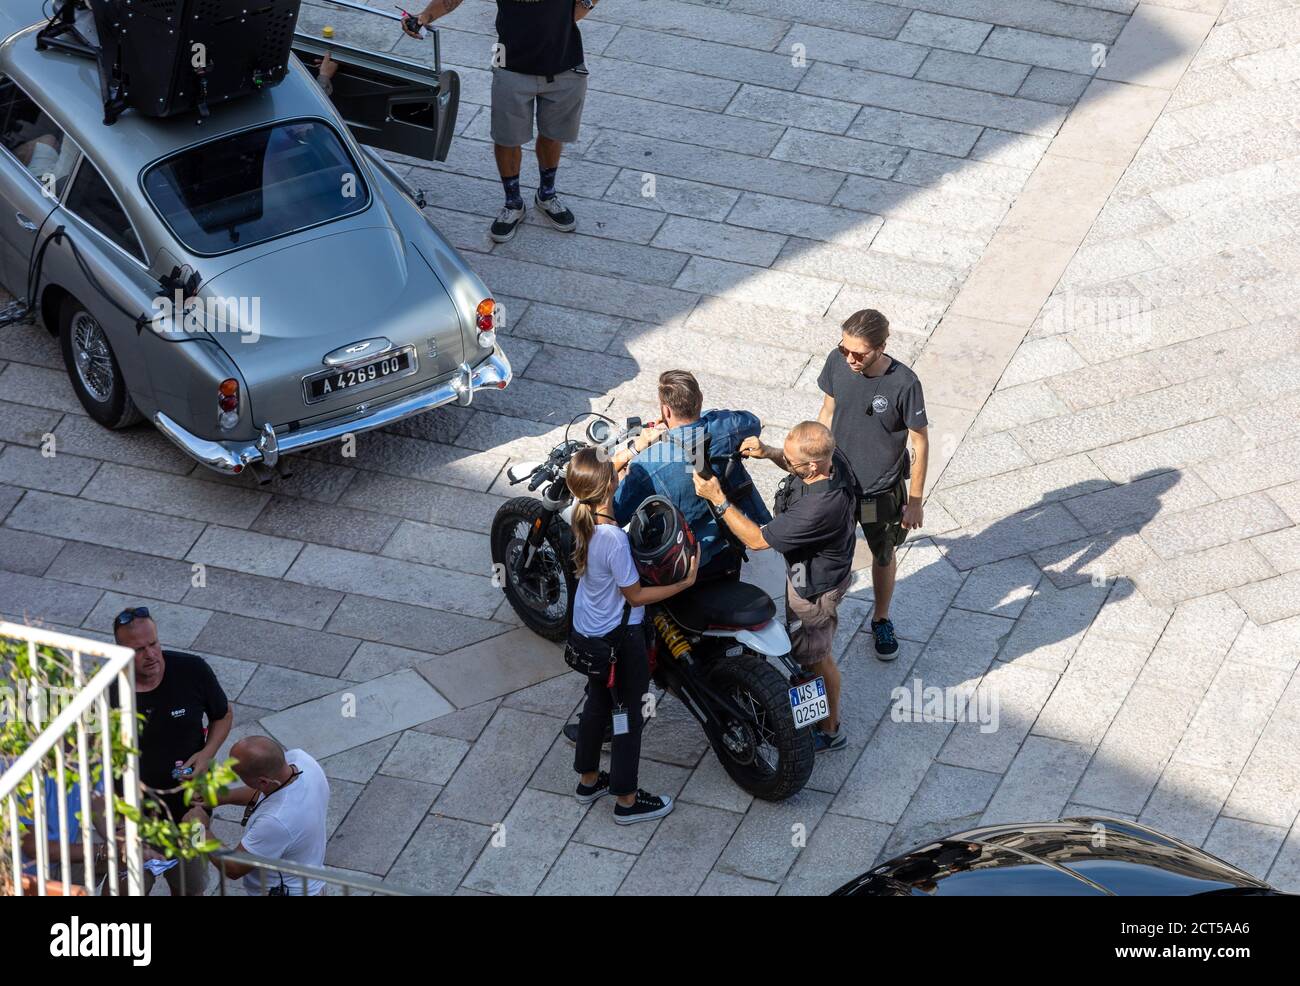 Matera, Italien - 15. September 2019: Bond 25, Aston Martin DB5 ausgestattet mit allen Geräten für die Aufnahme von Verfolgungsszenen aus dem Film "keine Zeit zu sterben" in Stockfoto